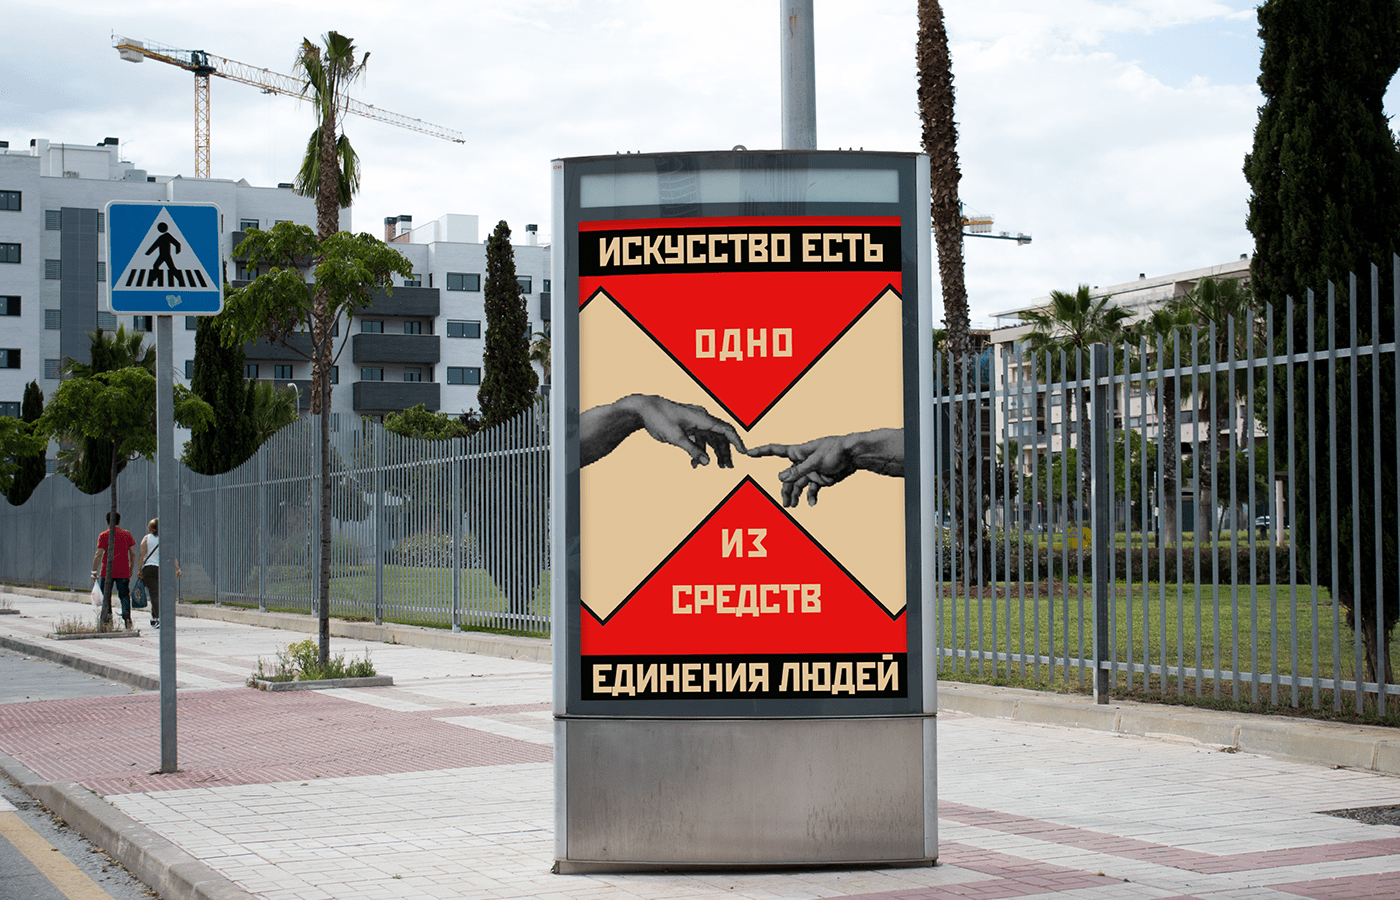 графический дизайн конструктивизм плакат постер типографика дизайн СССР афиша полиграфия реклама